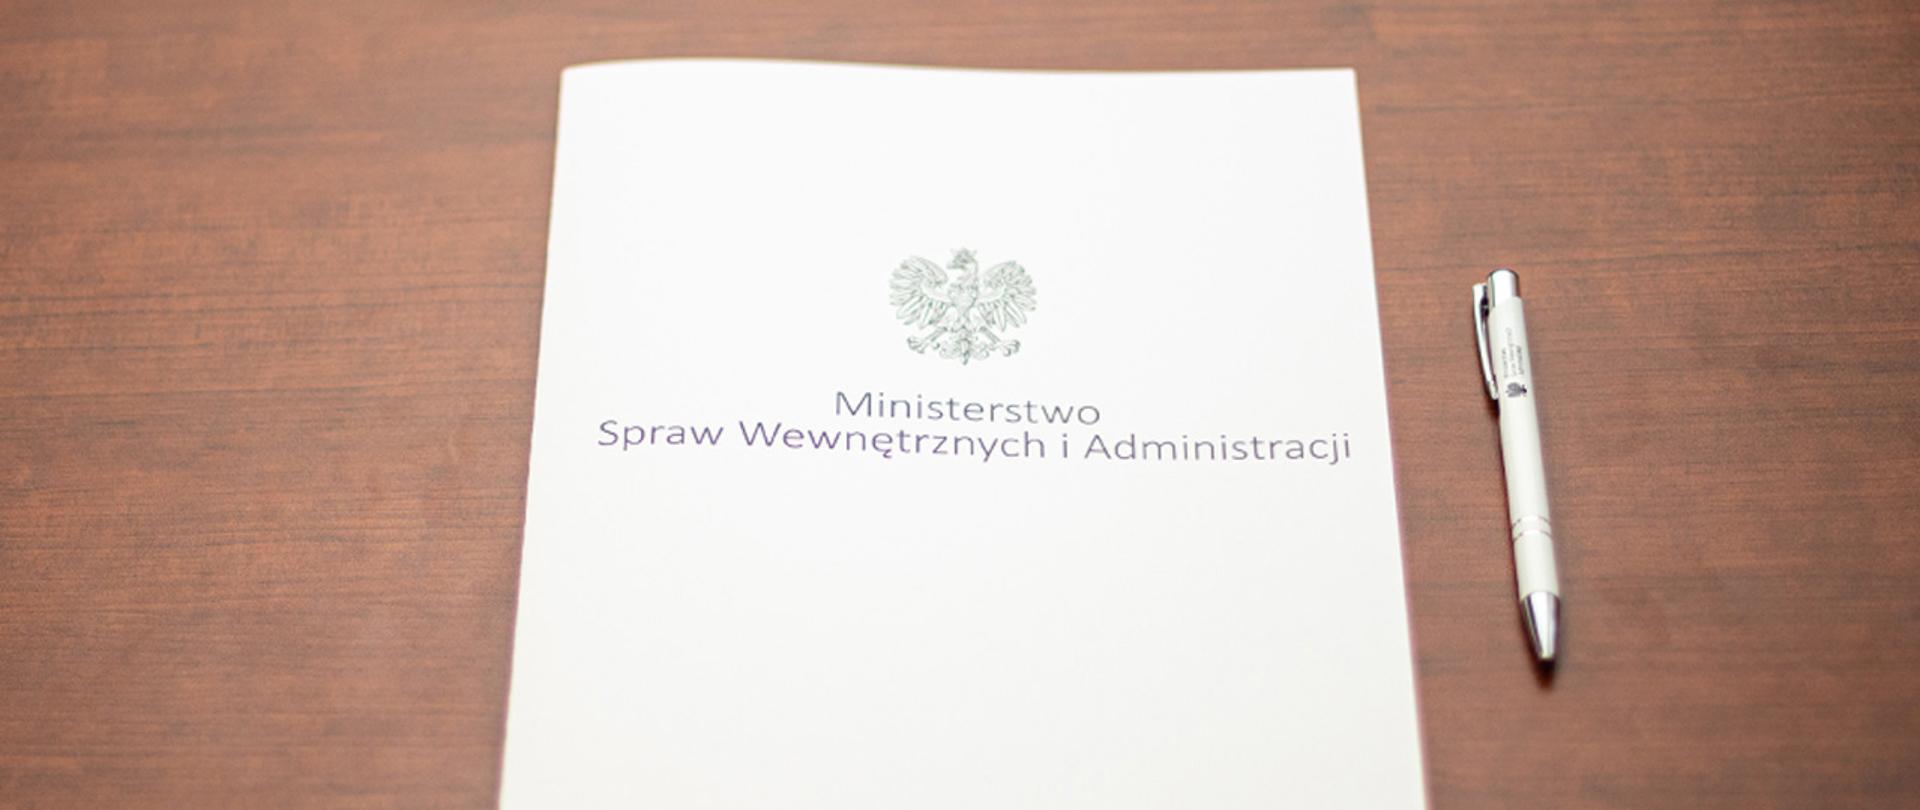 Na zdjęciu widać leżącą teczkę z napisem "Ministerstwo Spraw Wewnętrznych i Administracji" i orłem z godła narodowego i leżący obok długopis.